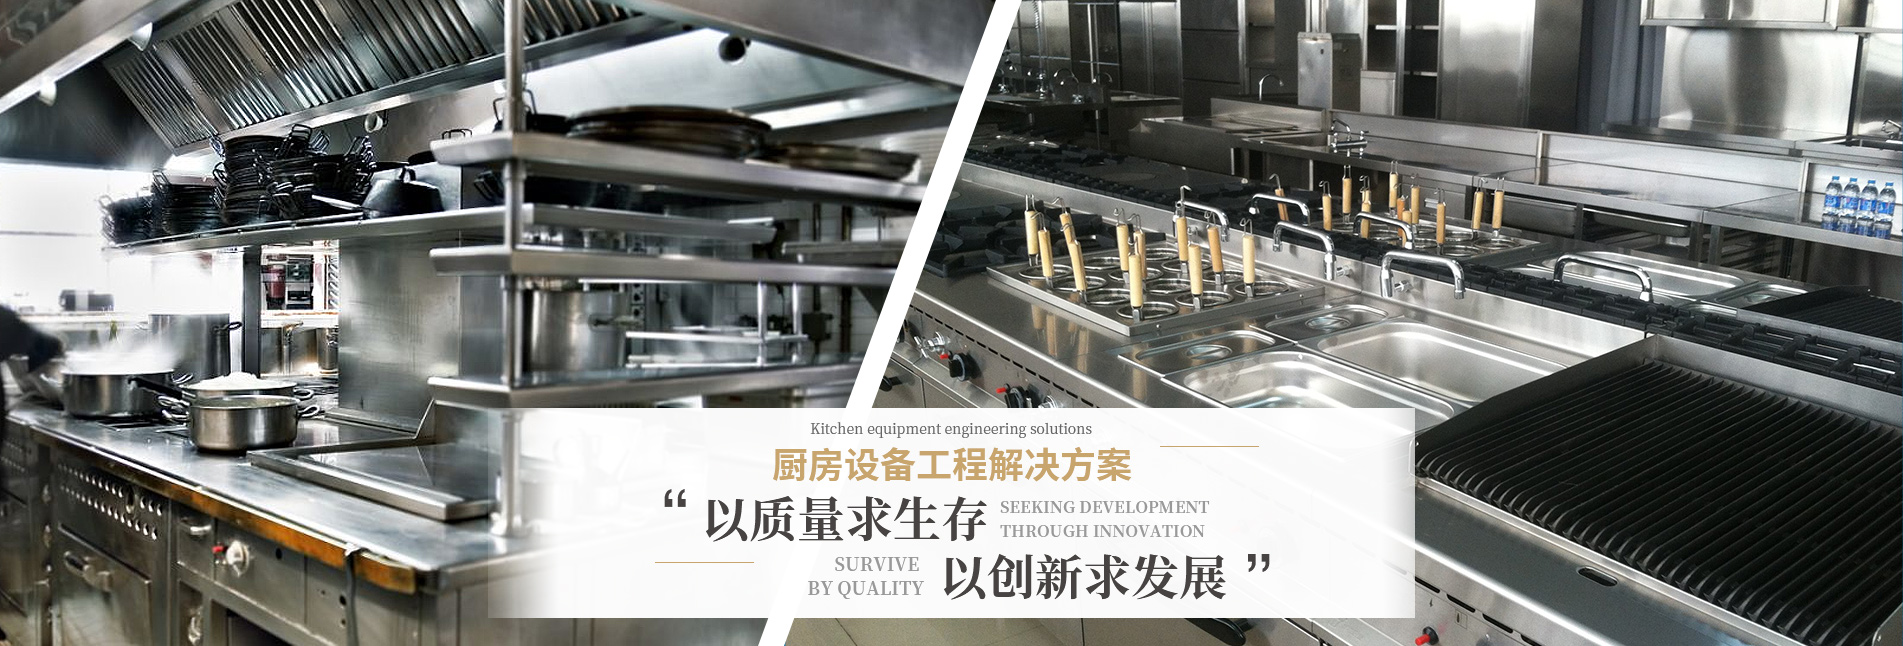 重庆厨房设备生产厂家.jpg